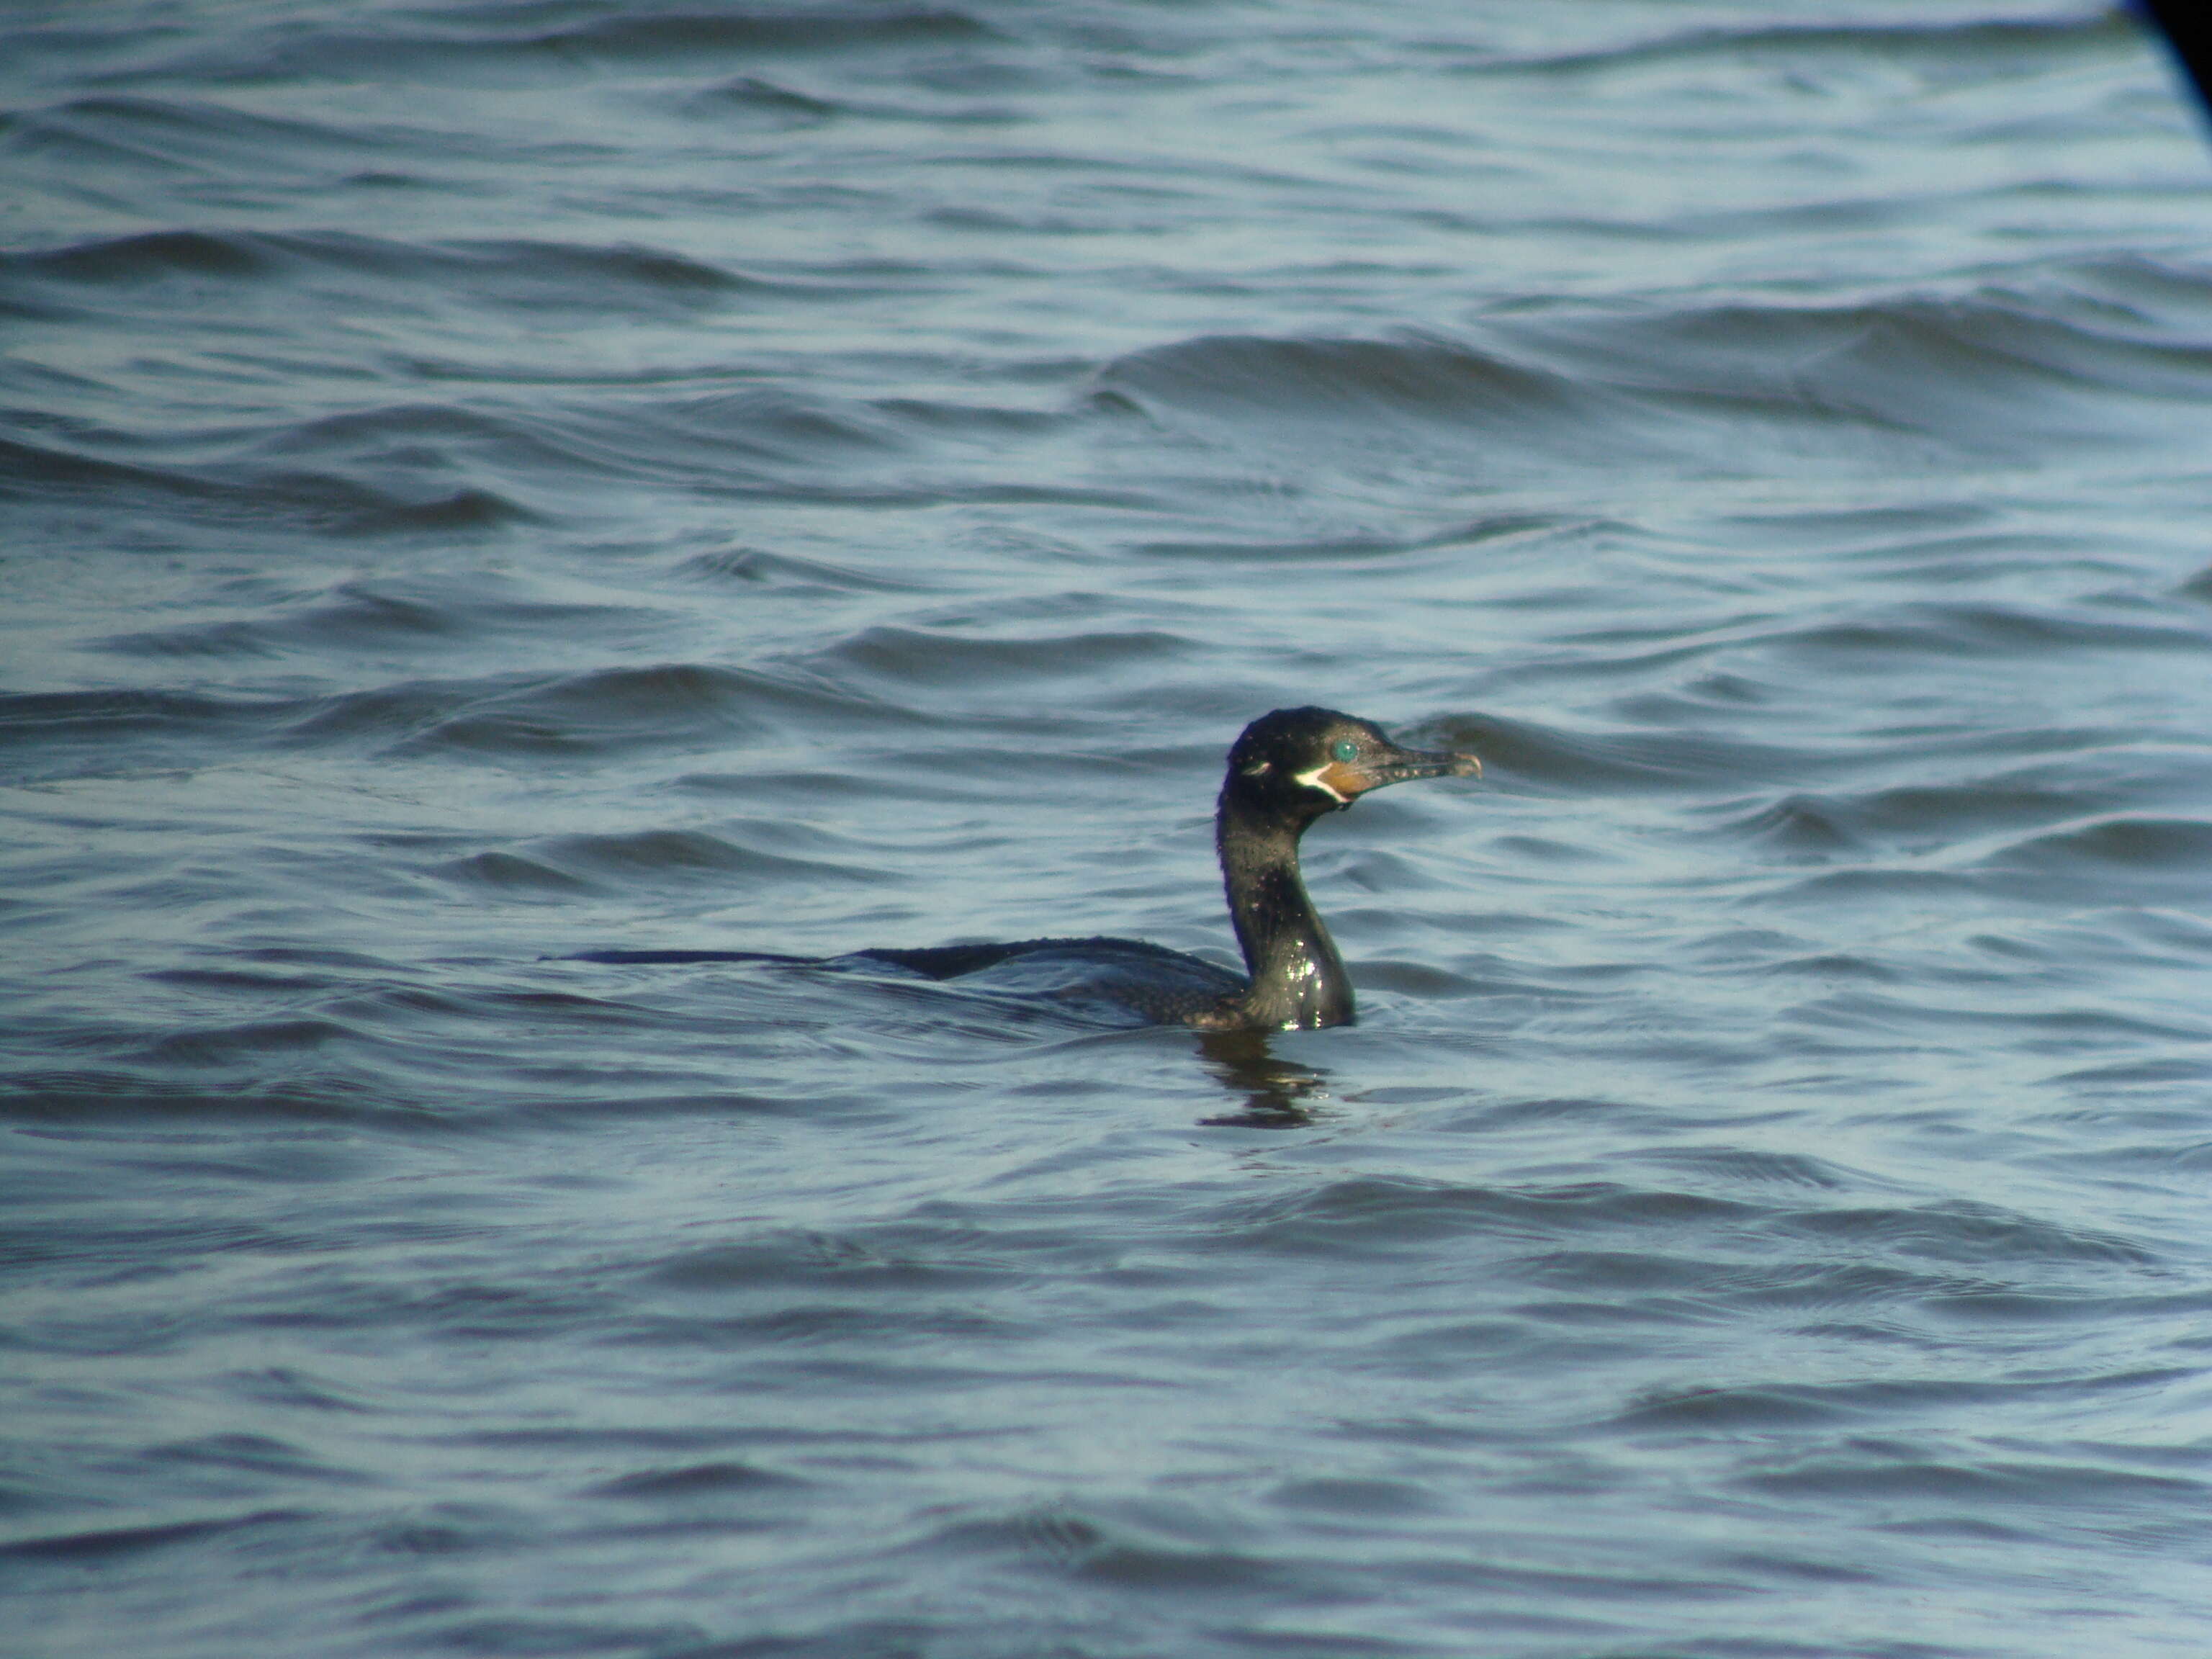 Image of Neotropic Cormorant